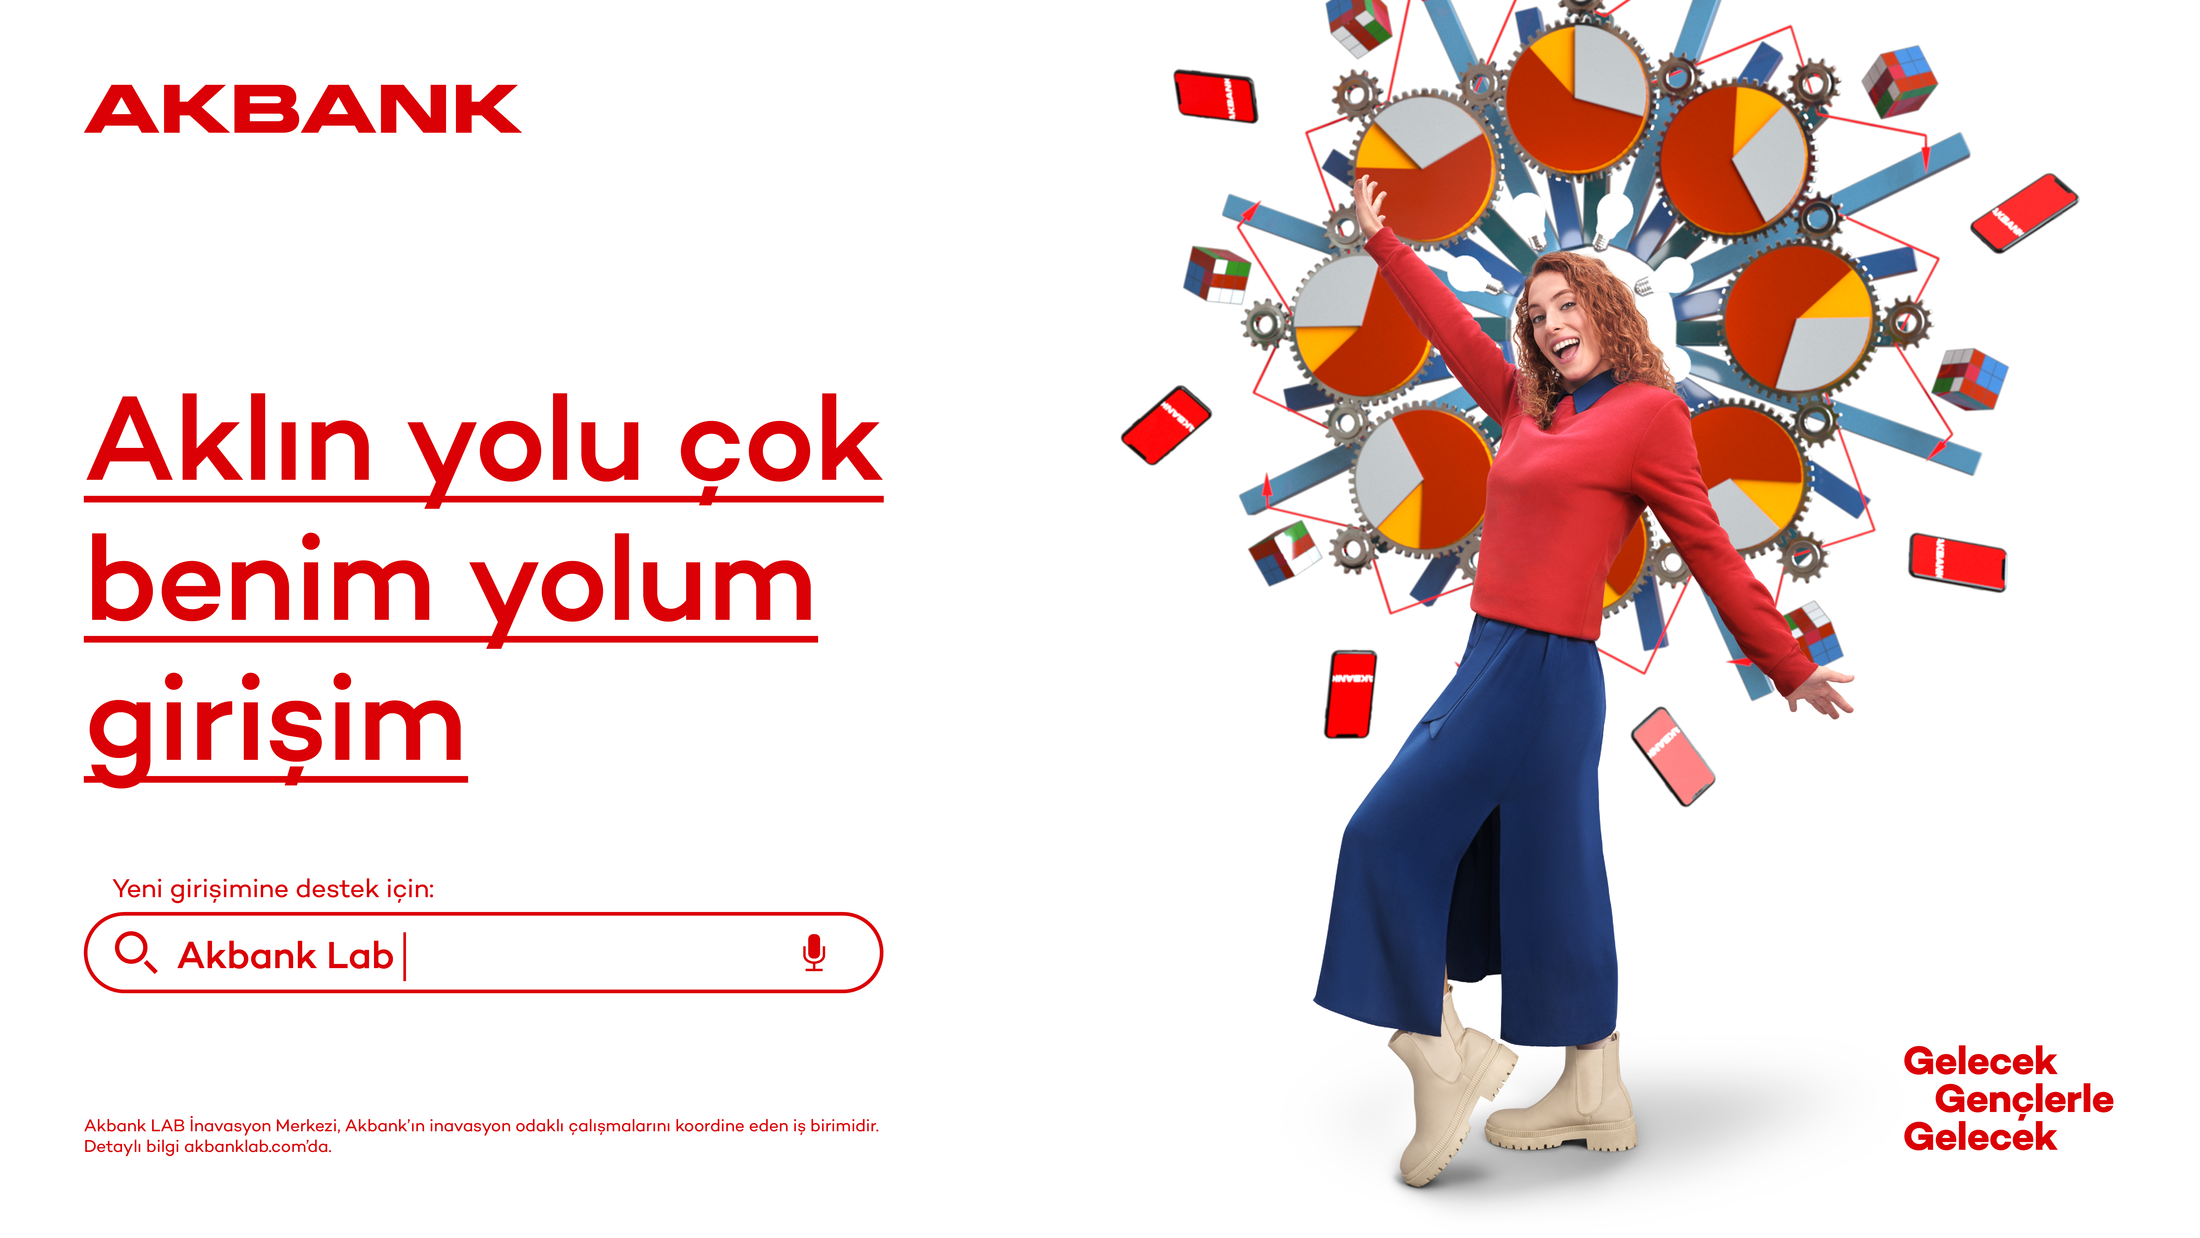 广告设计 . 土耳其Akbank“伟大的头脑独立思考”的专业运动广告设计